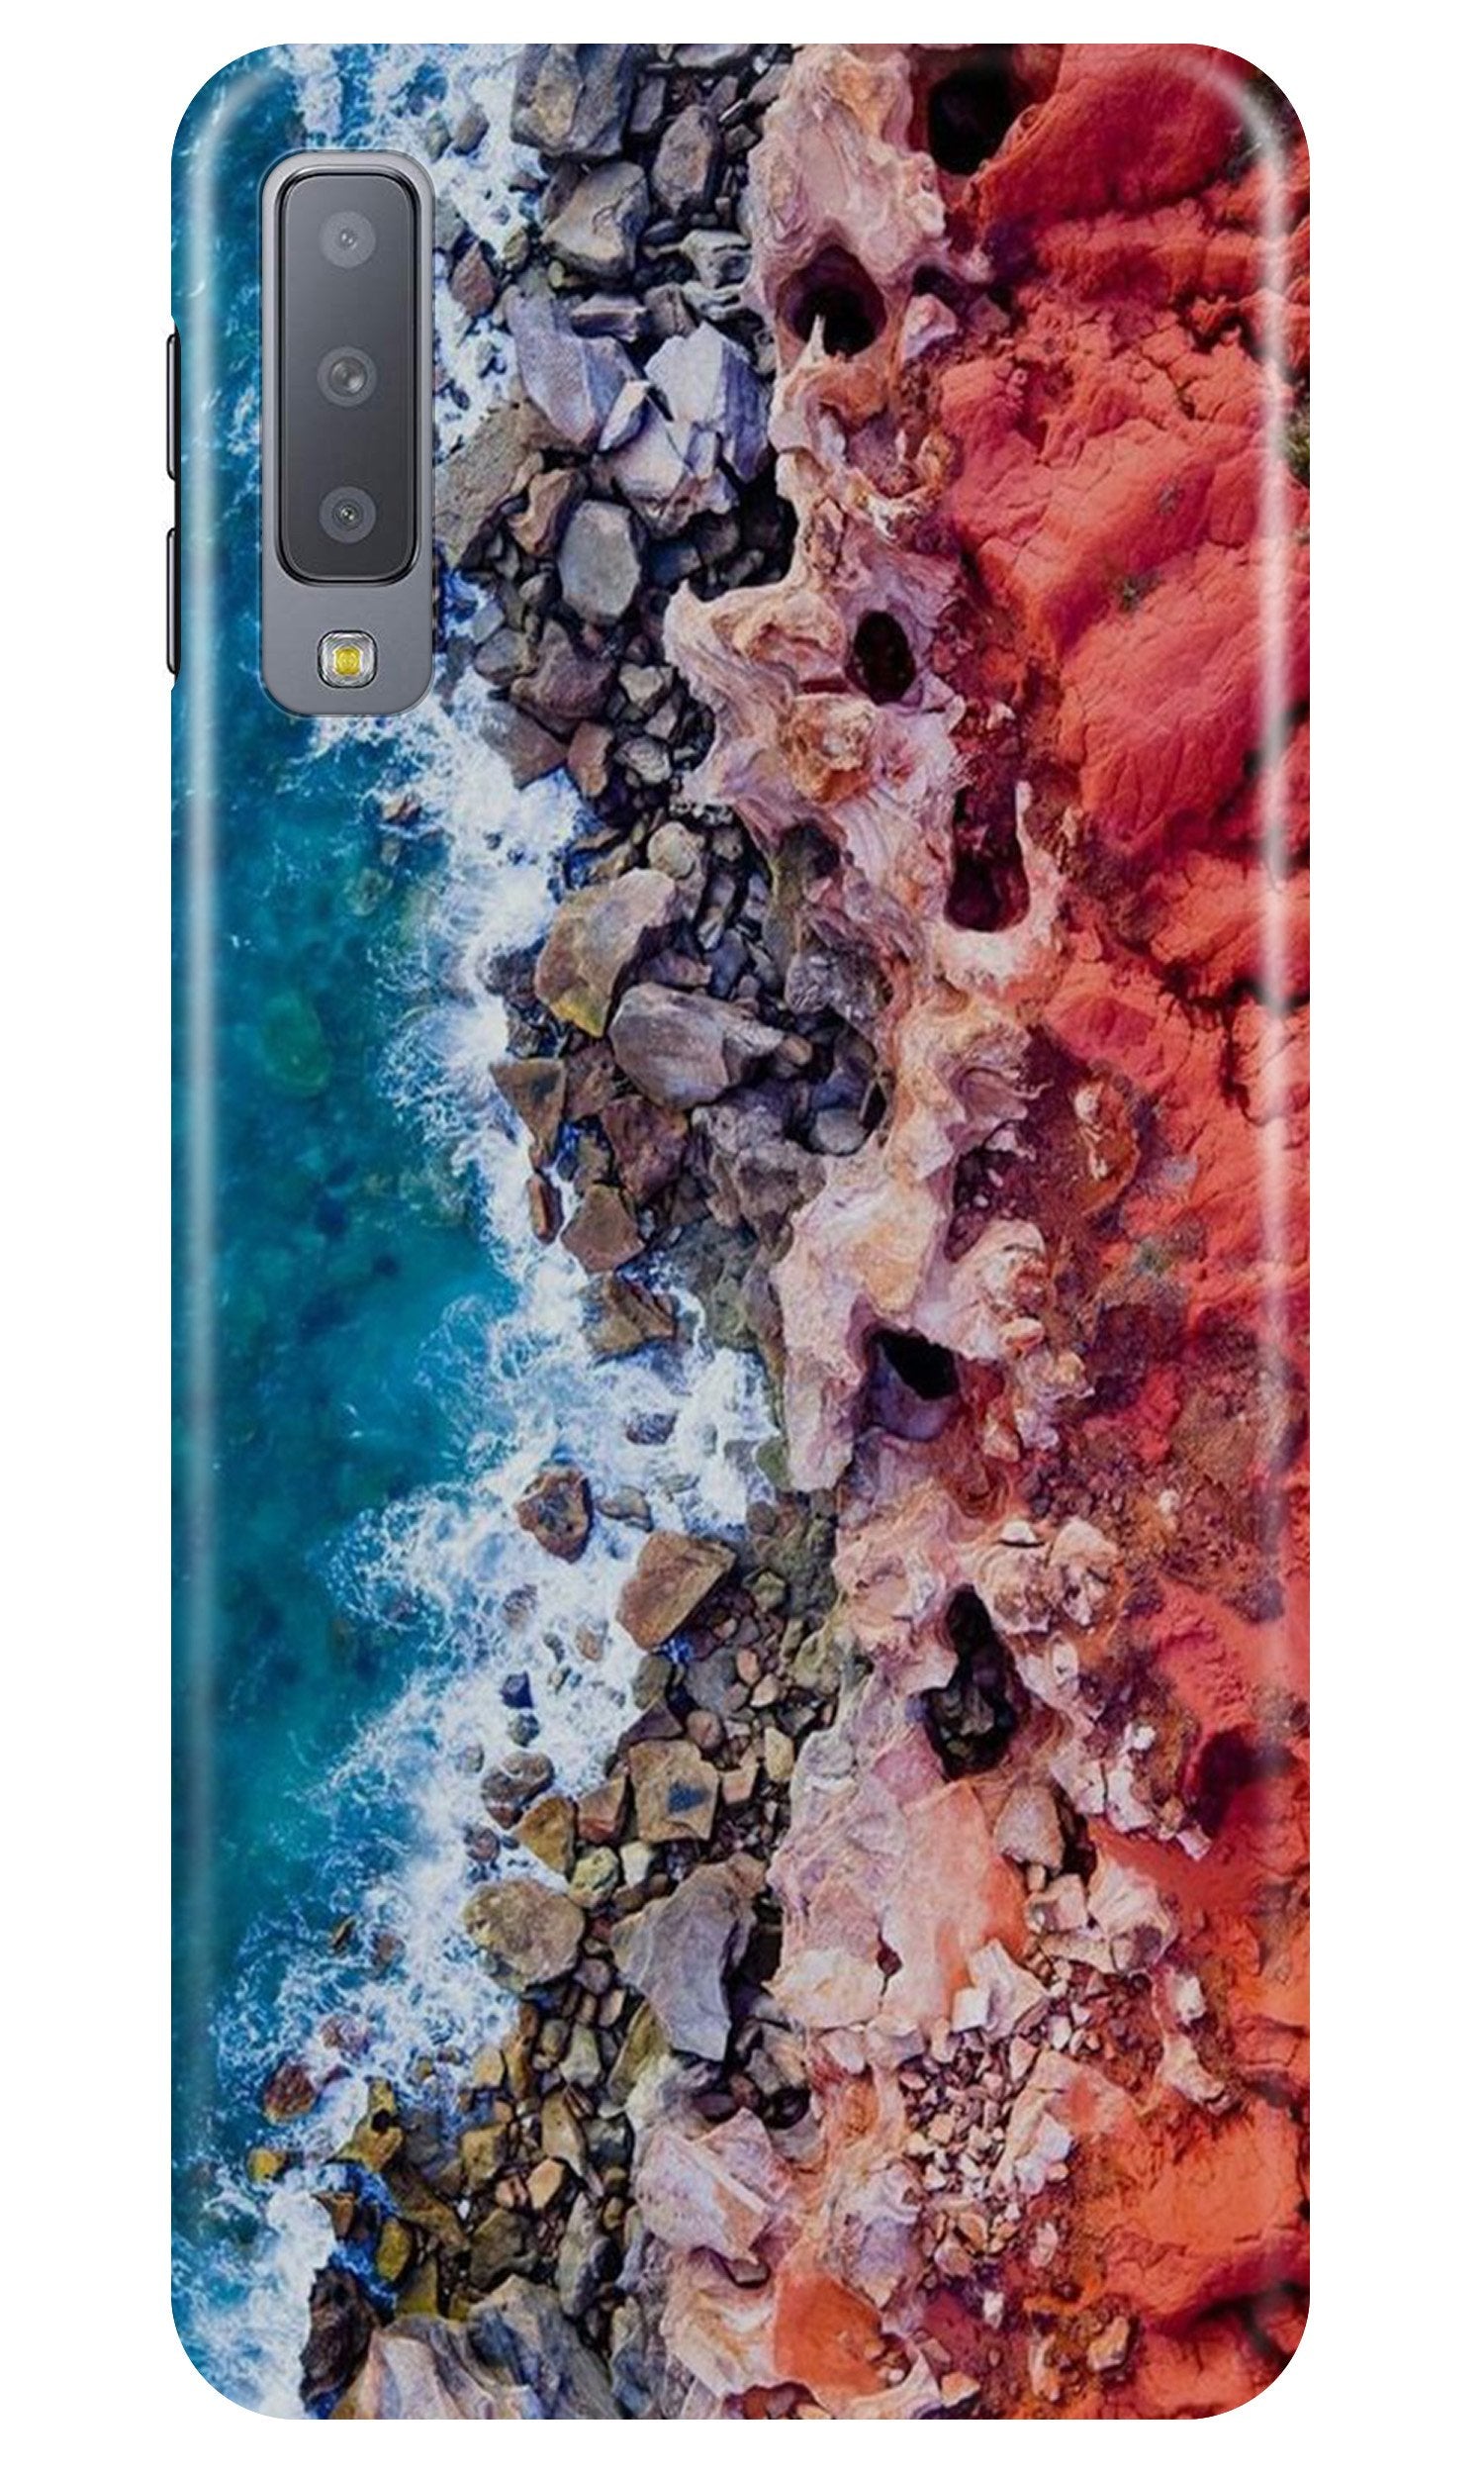 Sea Shore Case for Samung Galaxy A70s (Design No. 273)